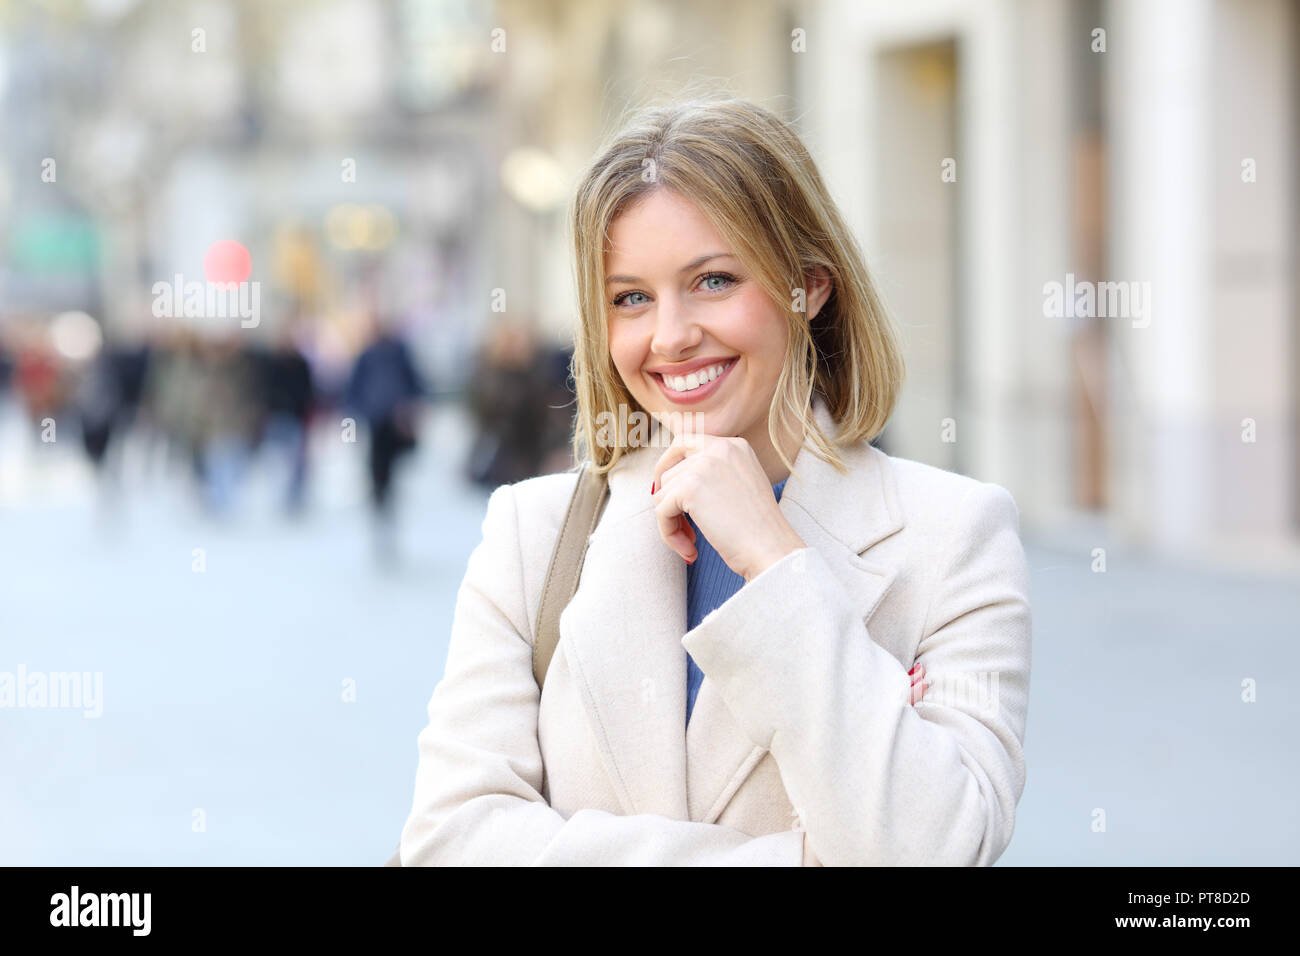 Vue avant, portrait d'une dame élégante heureux posing looking at camera dans la rue Banque D'Images